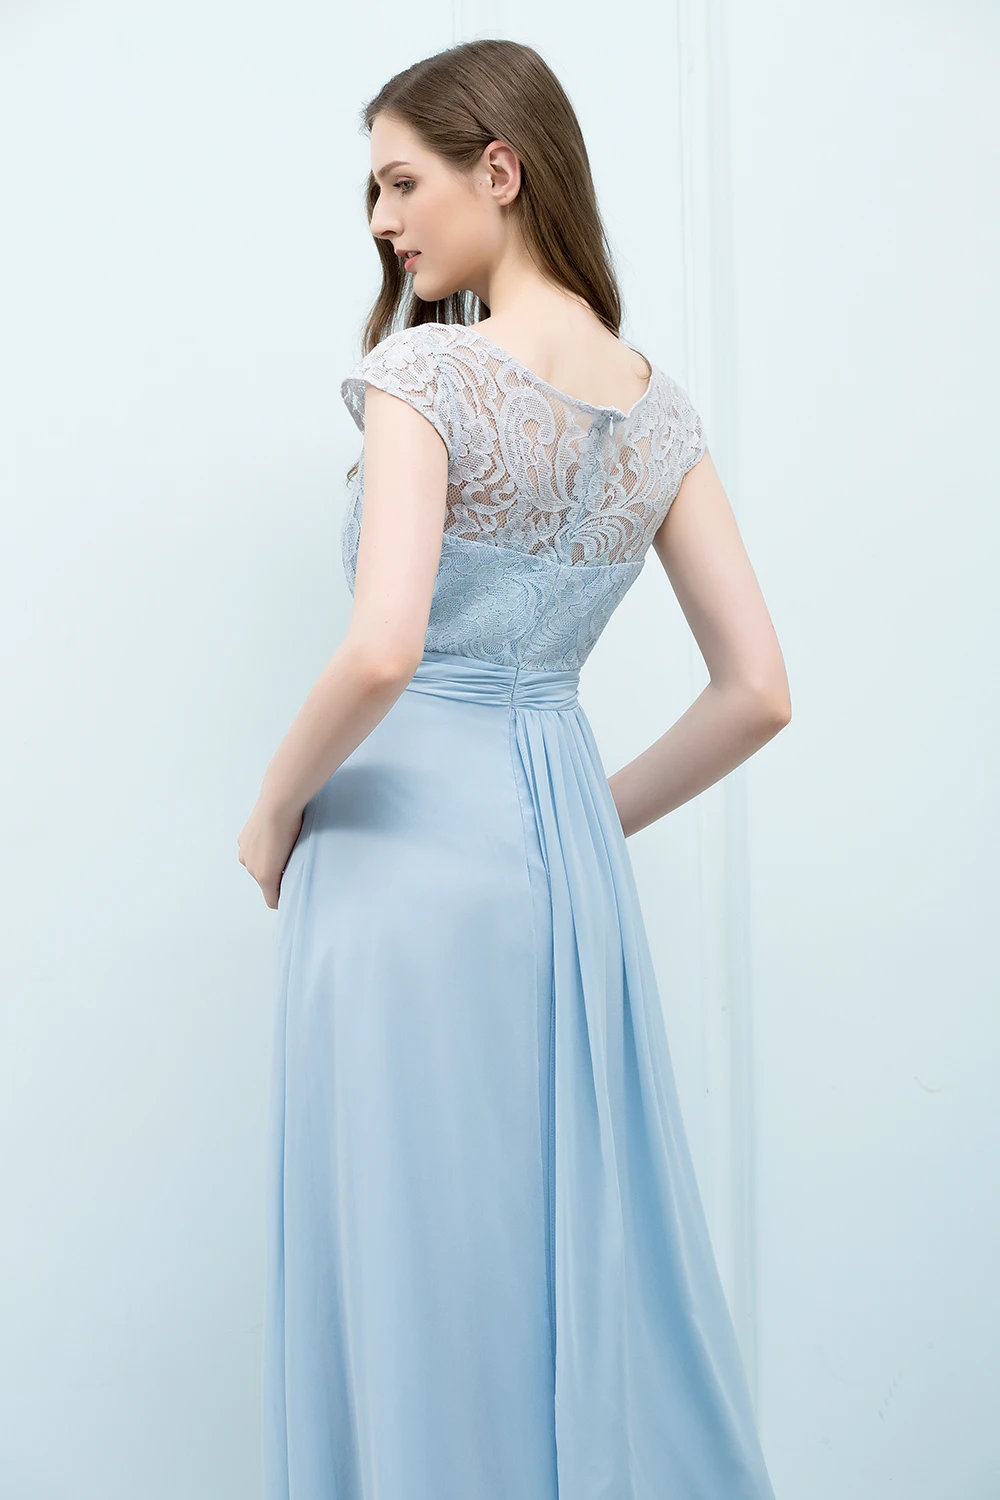 Robe demoiselle d'honneur Небесно-Голубой линии кружевное платье подружки невесты длинные 2019 без рукавов шифоновое платья бальные